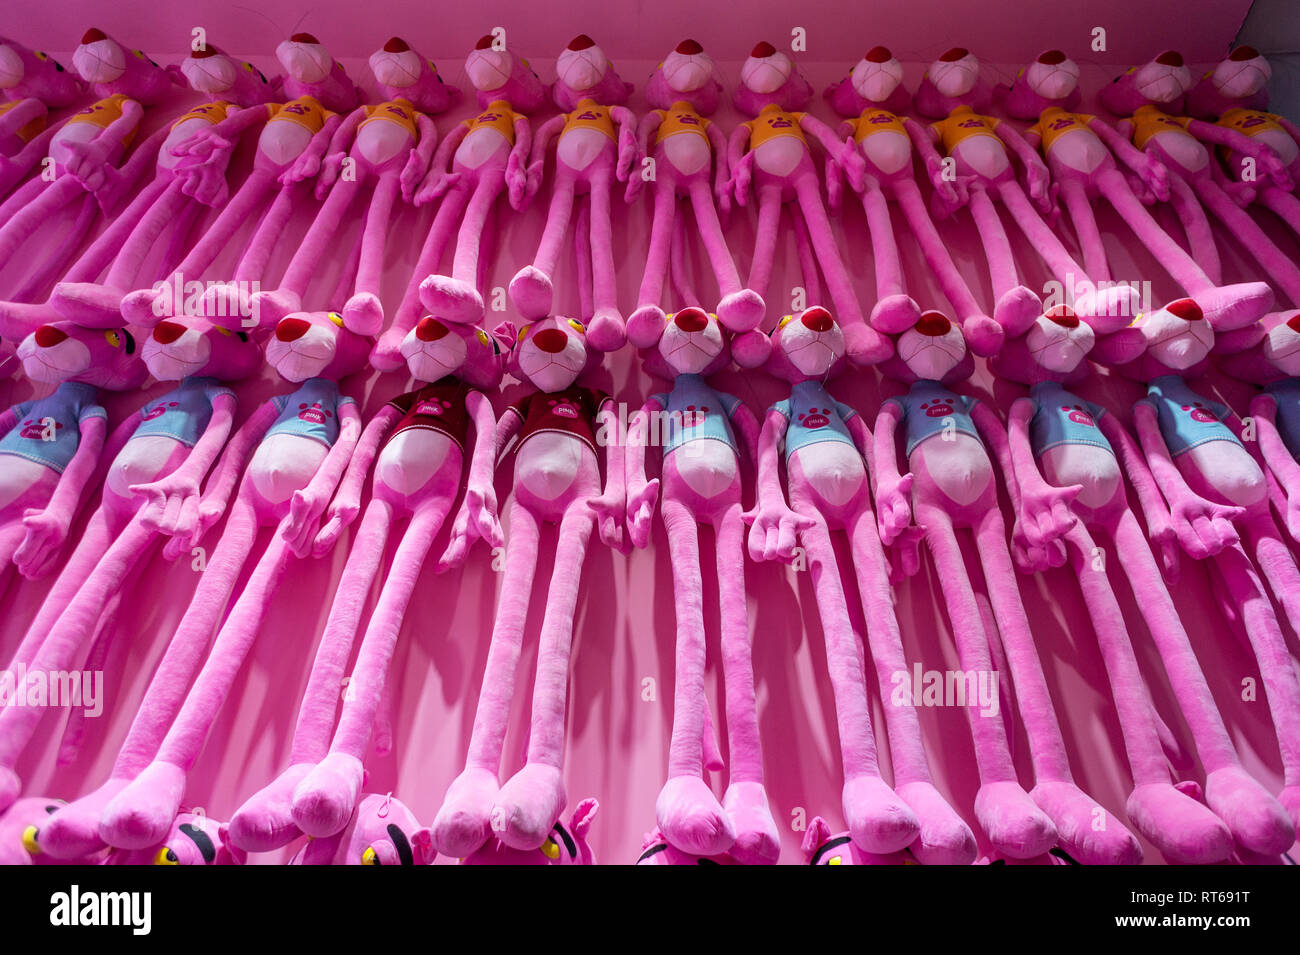 pink panther dolls